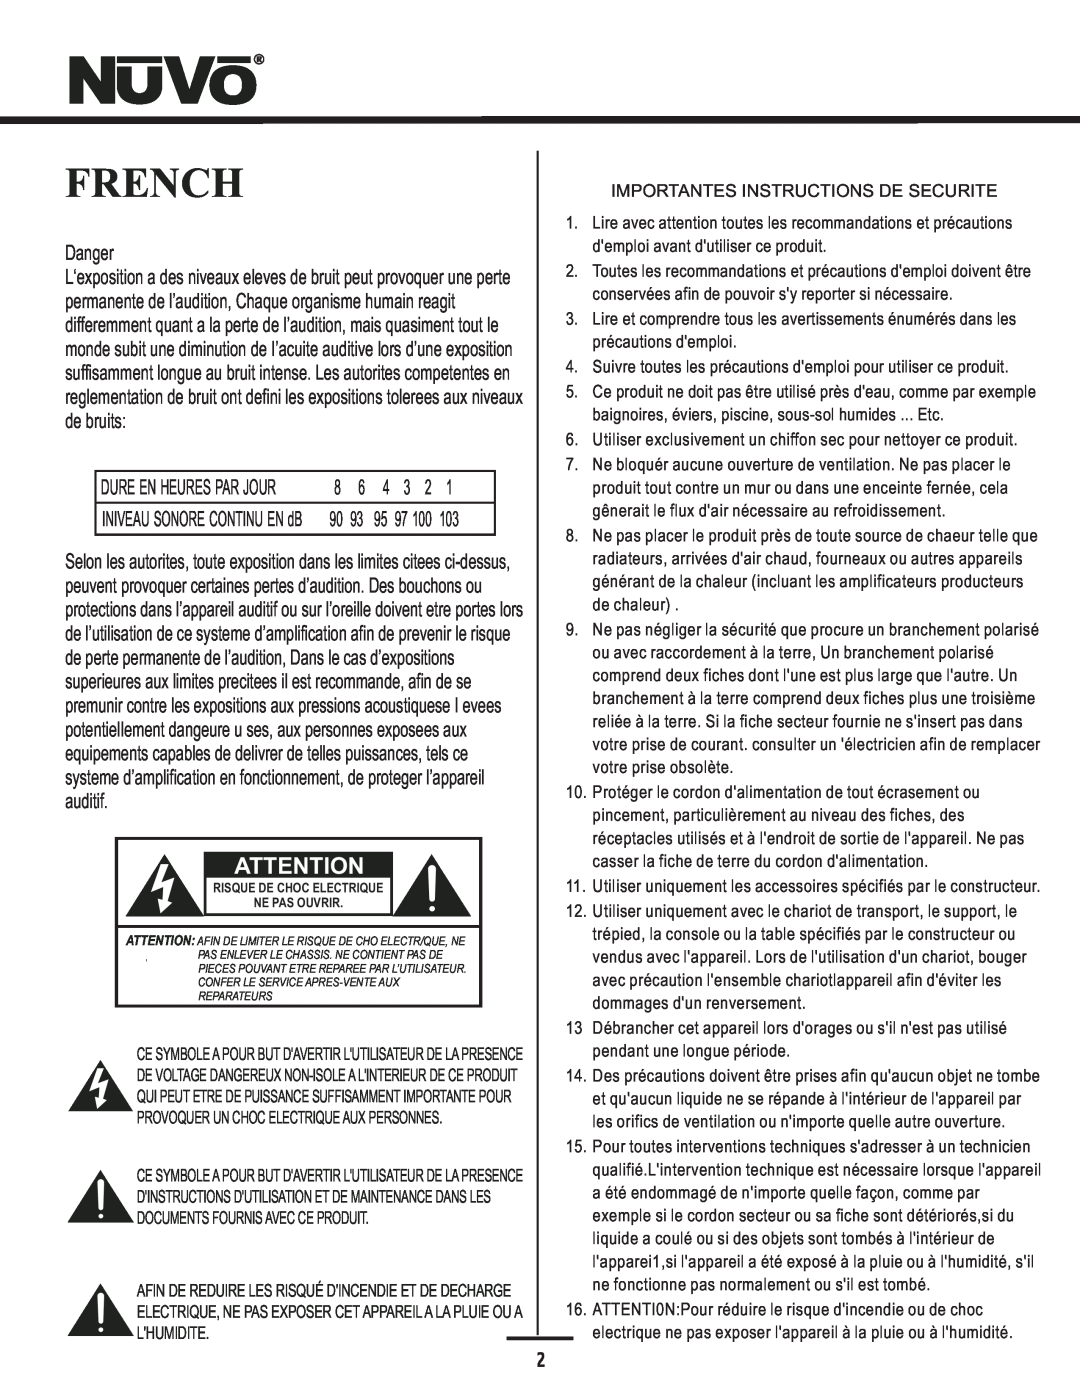 Nuvo NV-E6DXS-DC, NV-E6DMS-DC manual French, Danger 